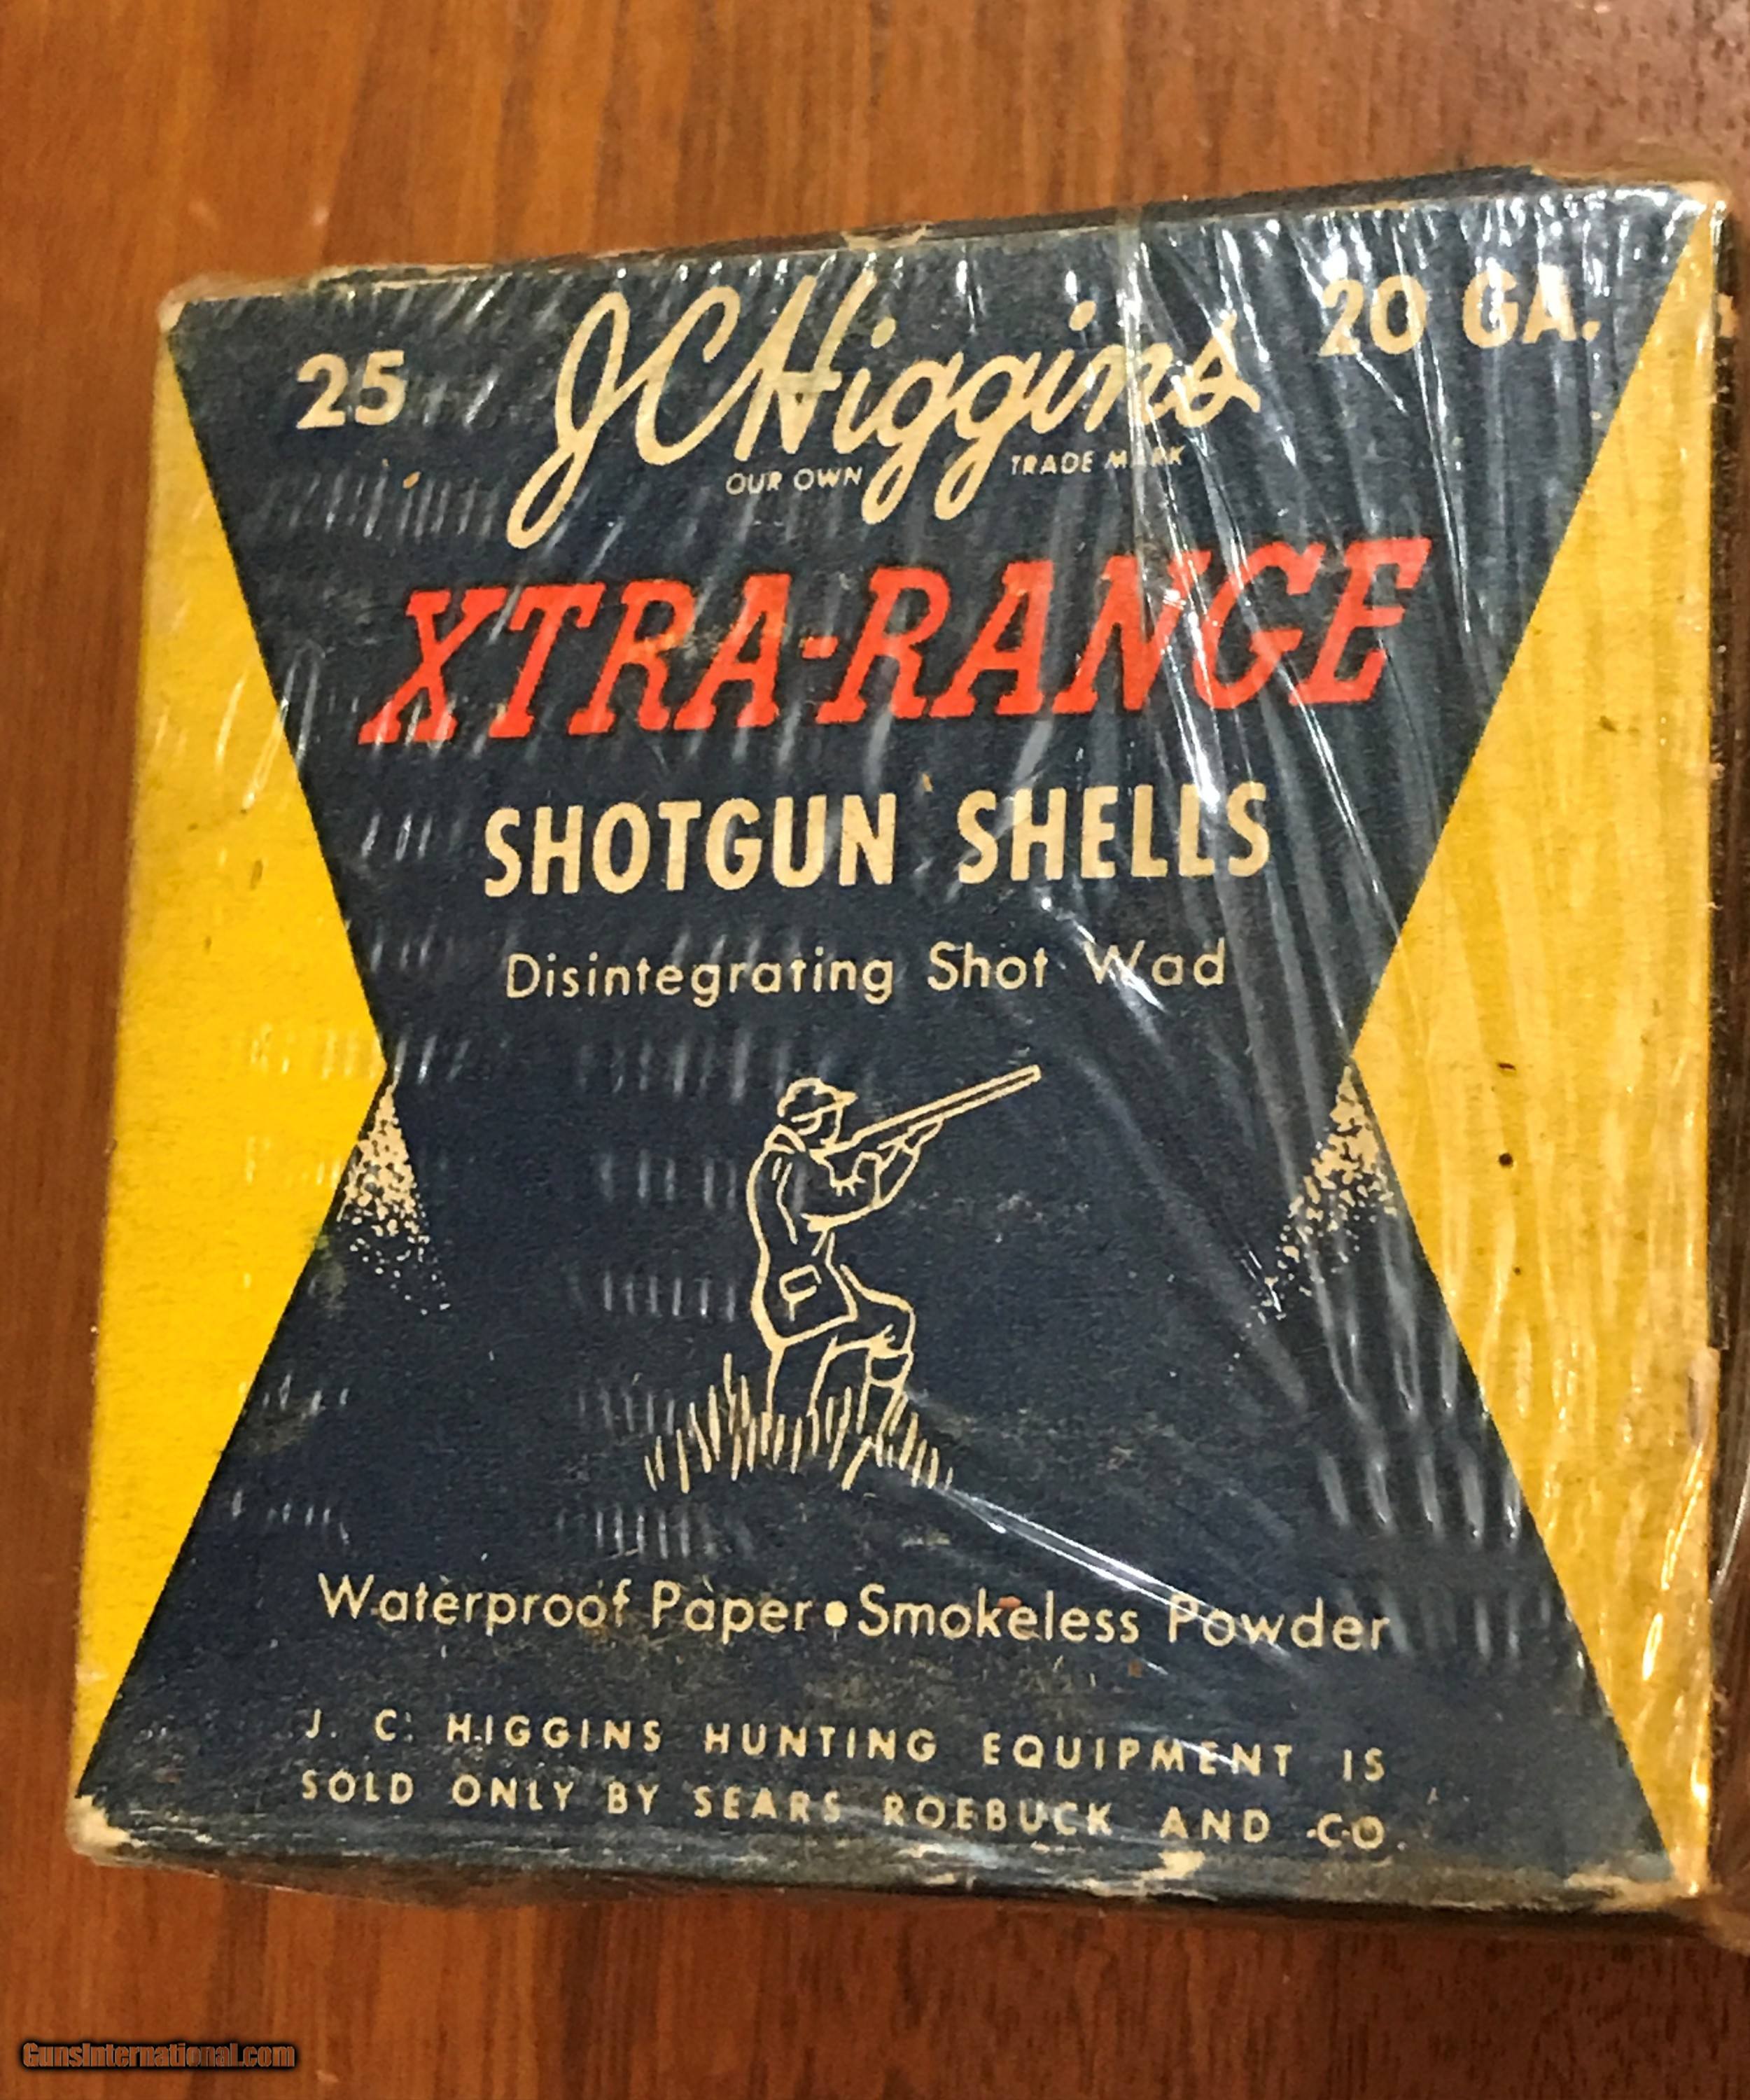 Rare JC Higgins Box of 20 ga Paper shotgun shells - vintage full box